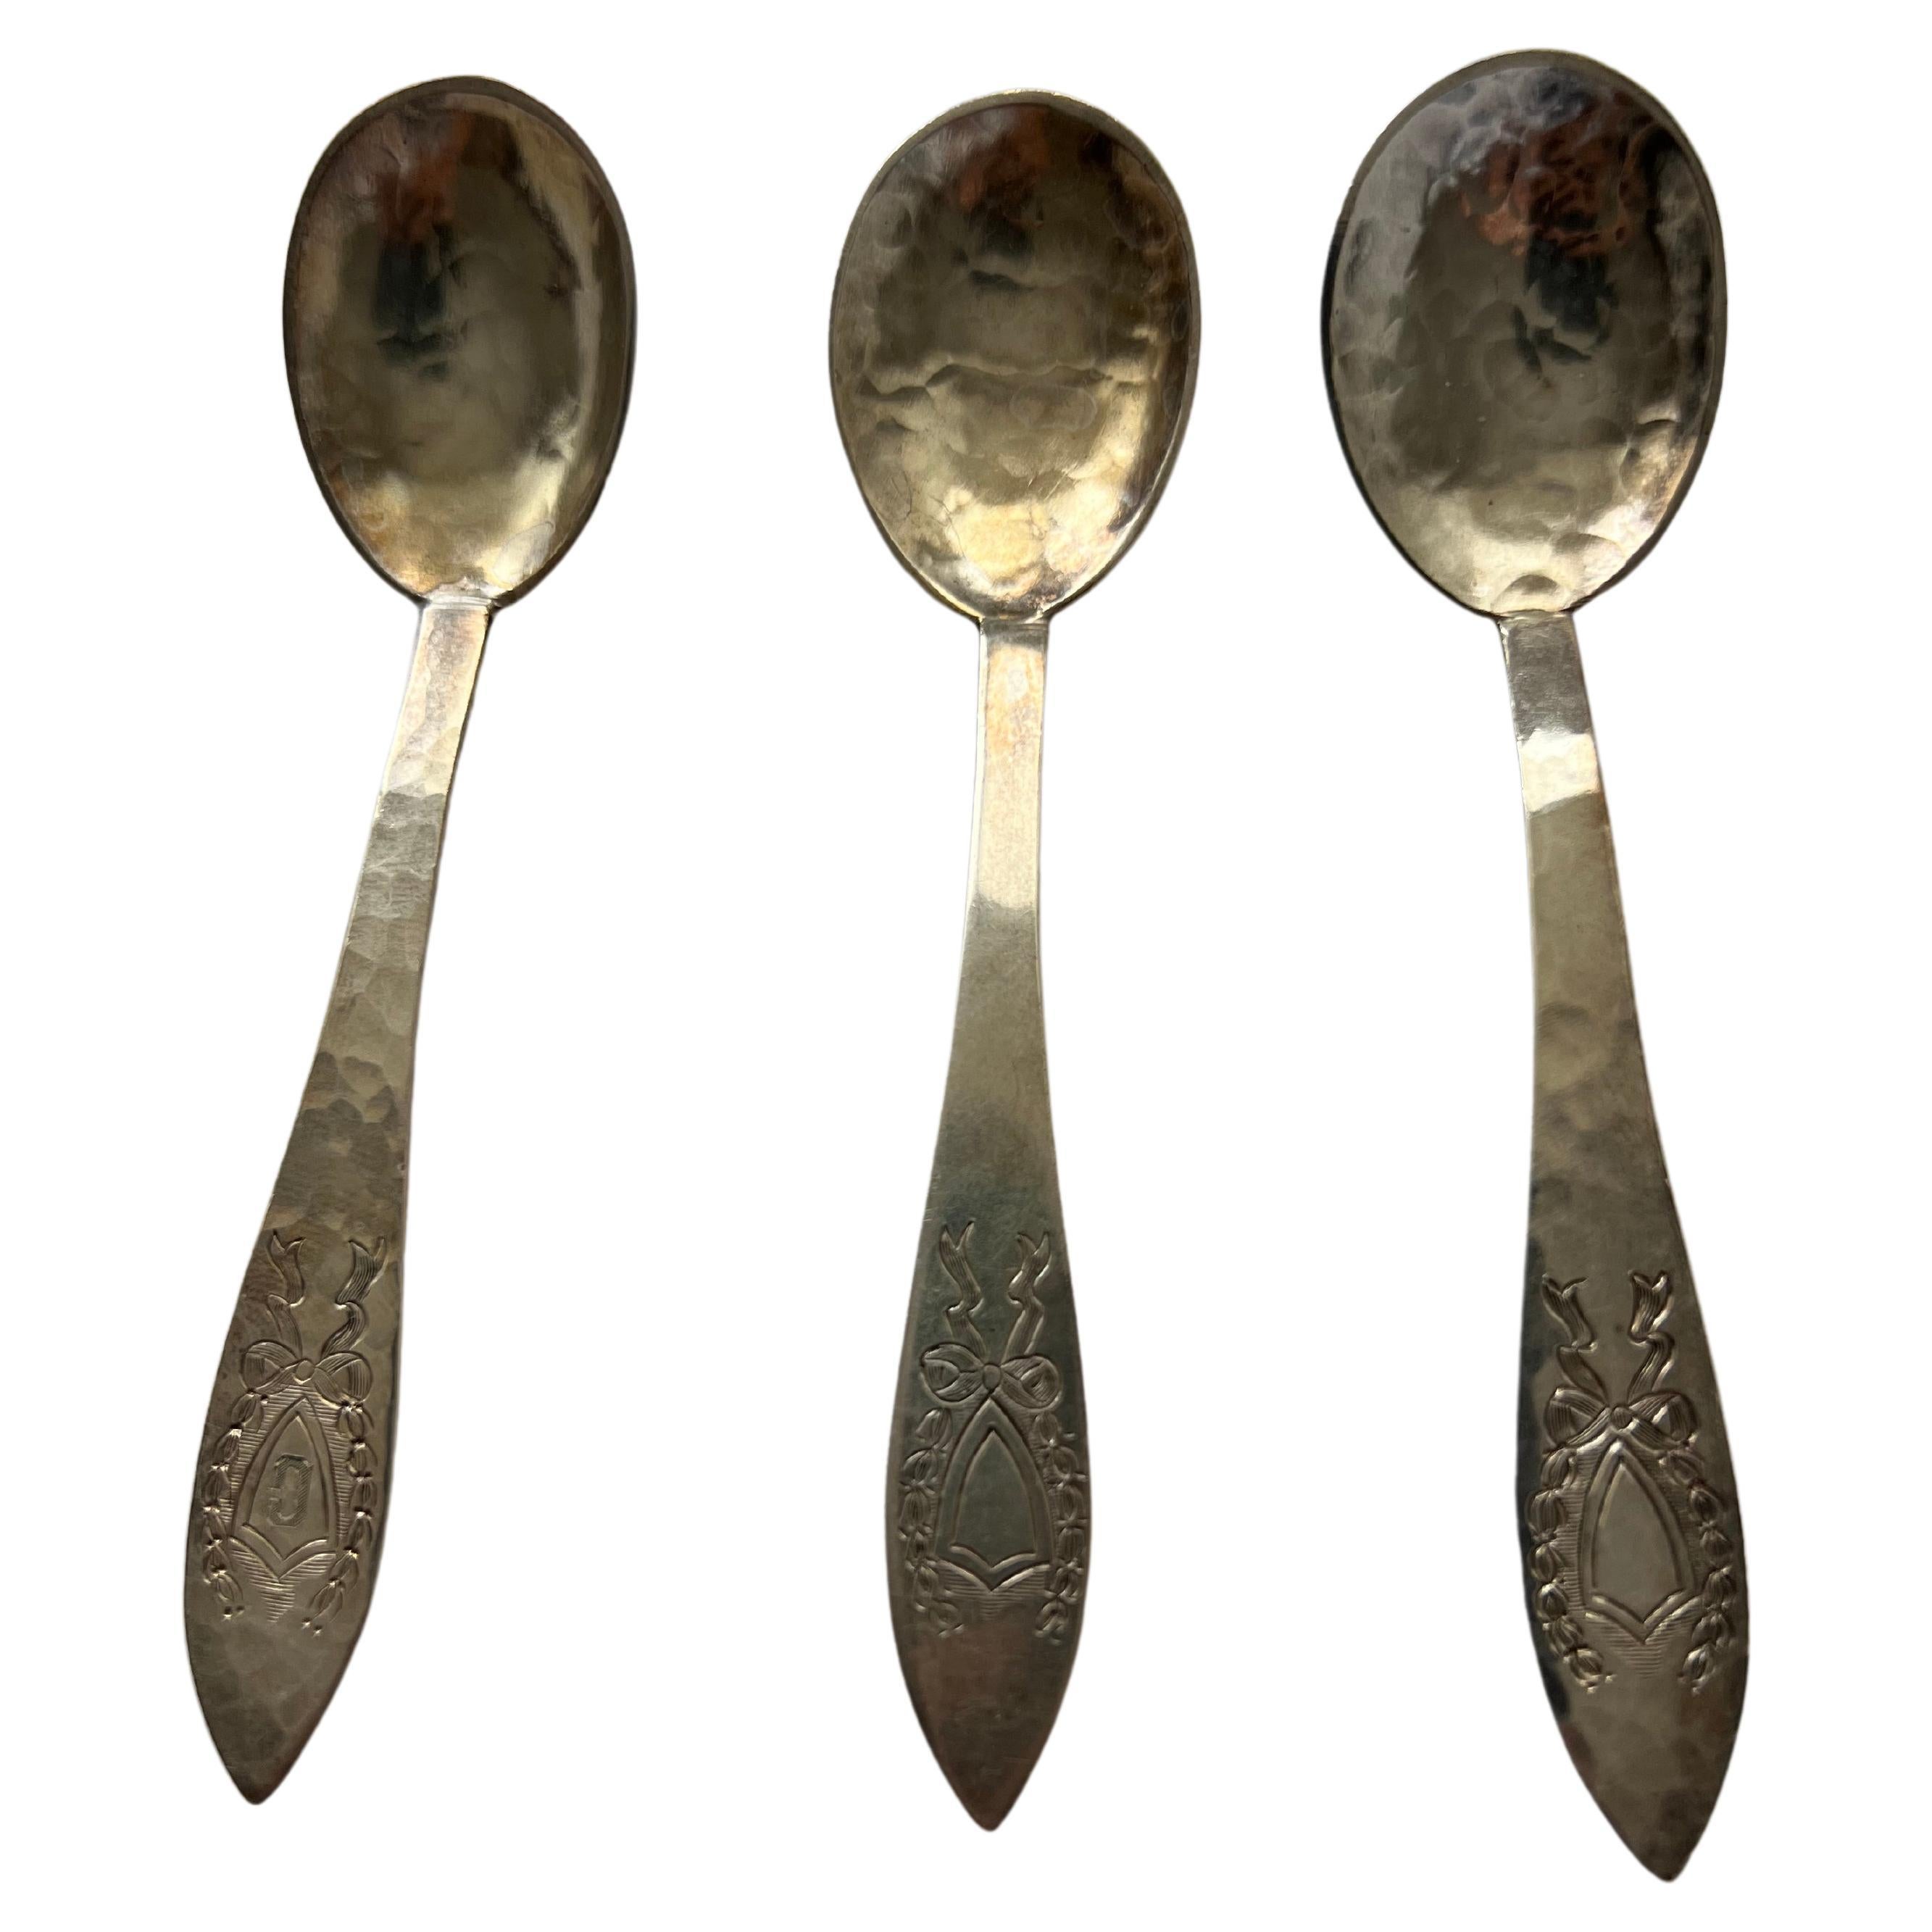 Antique Silver Tea Spoon Set Galt Vintage Estate Classic Decoration Kitchenware For Sale